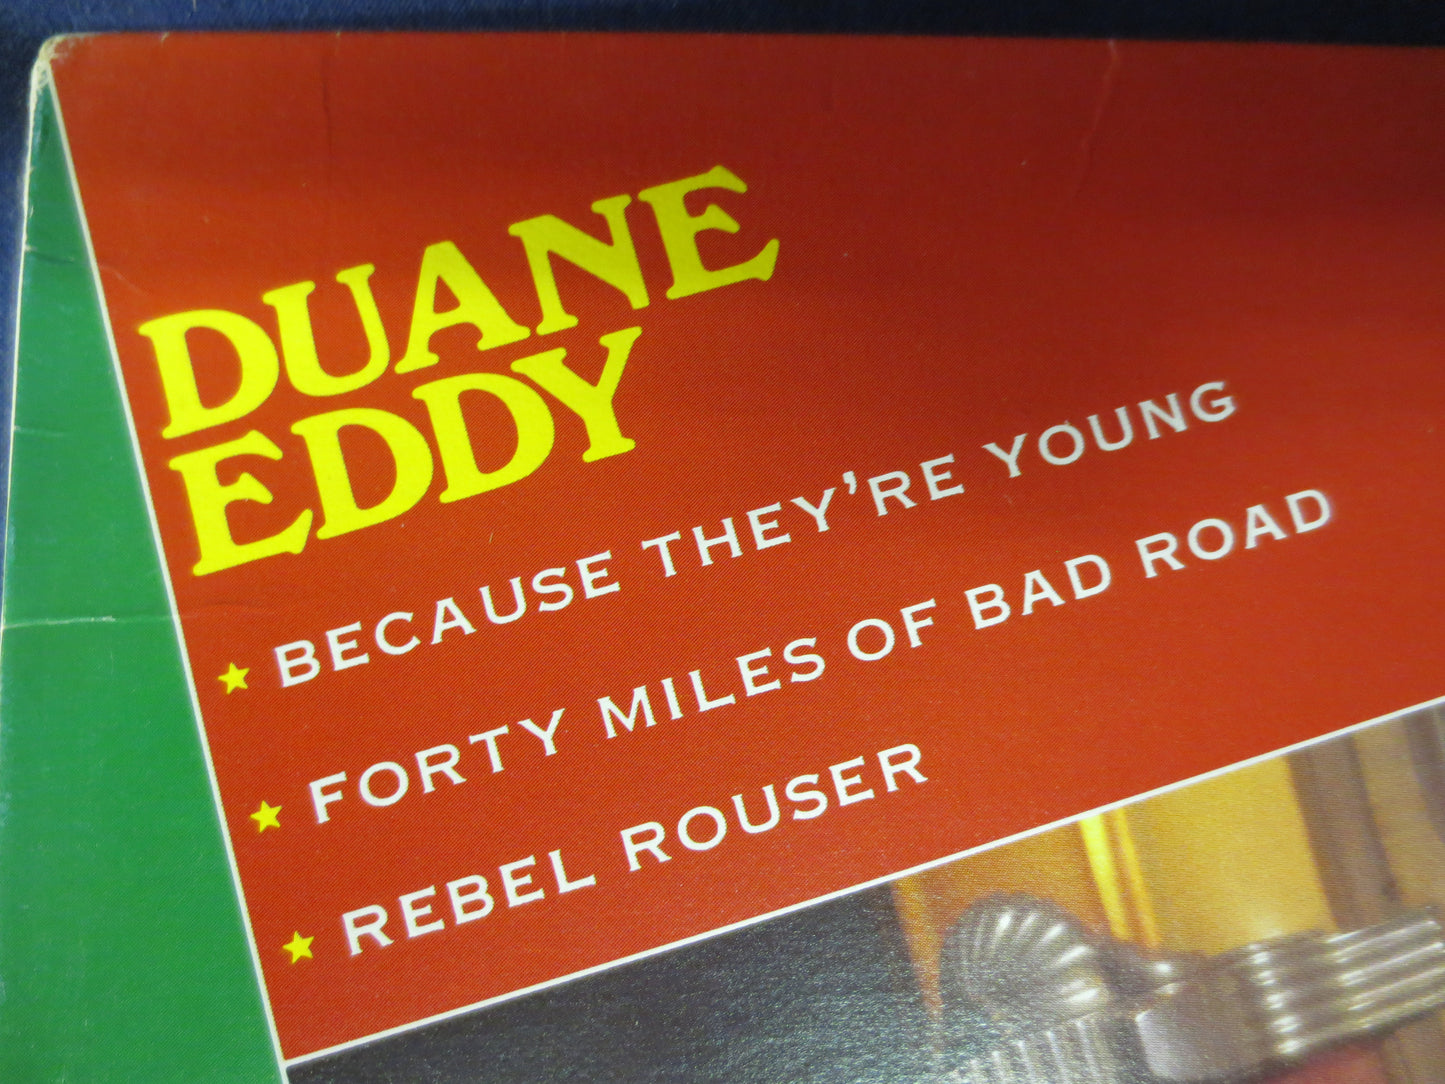 DUANE EDDY, Rock Record, Duane Eddy Record, Duane Eddy Album, Duane Eddy Lp, Vinyl Record, Vinyl Rock, Vinyl, 1982 Records